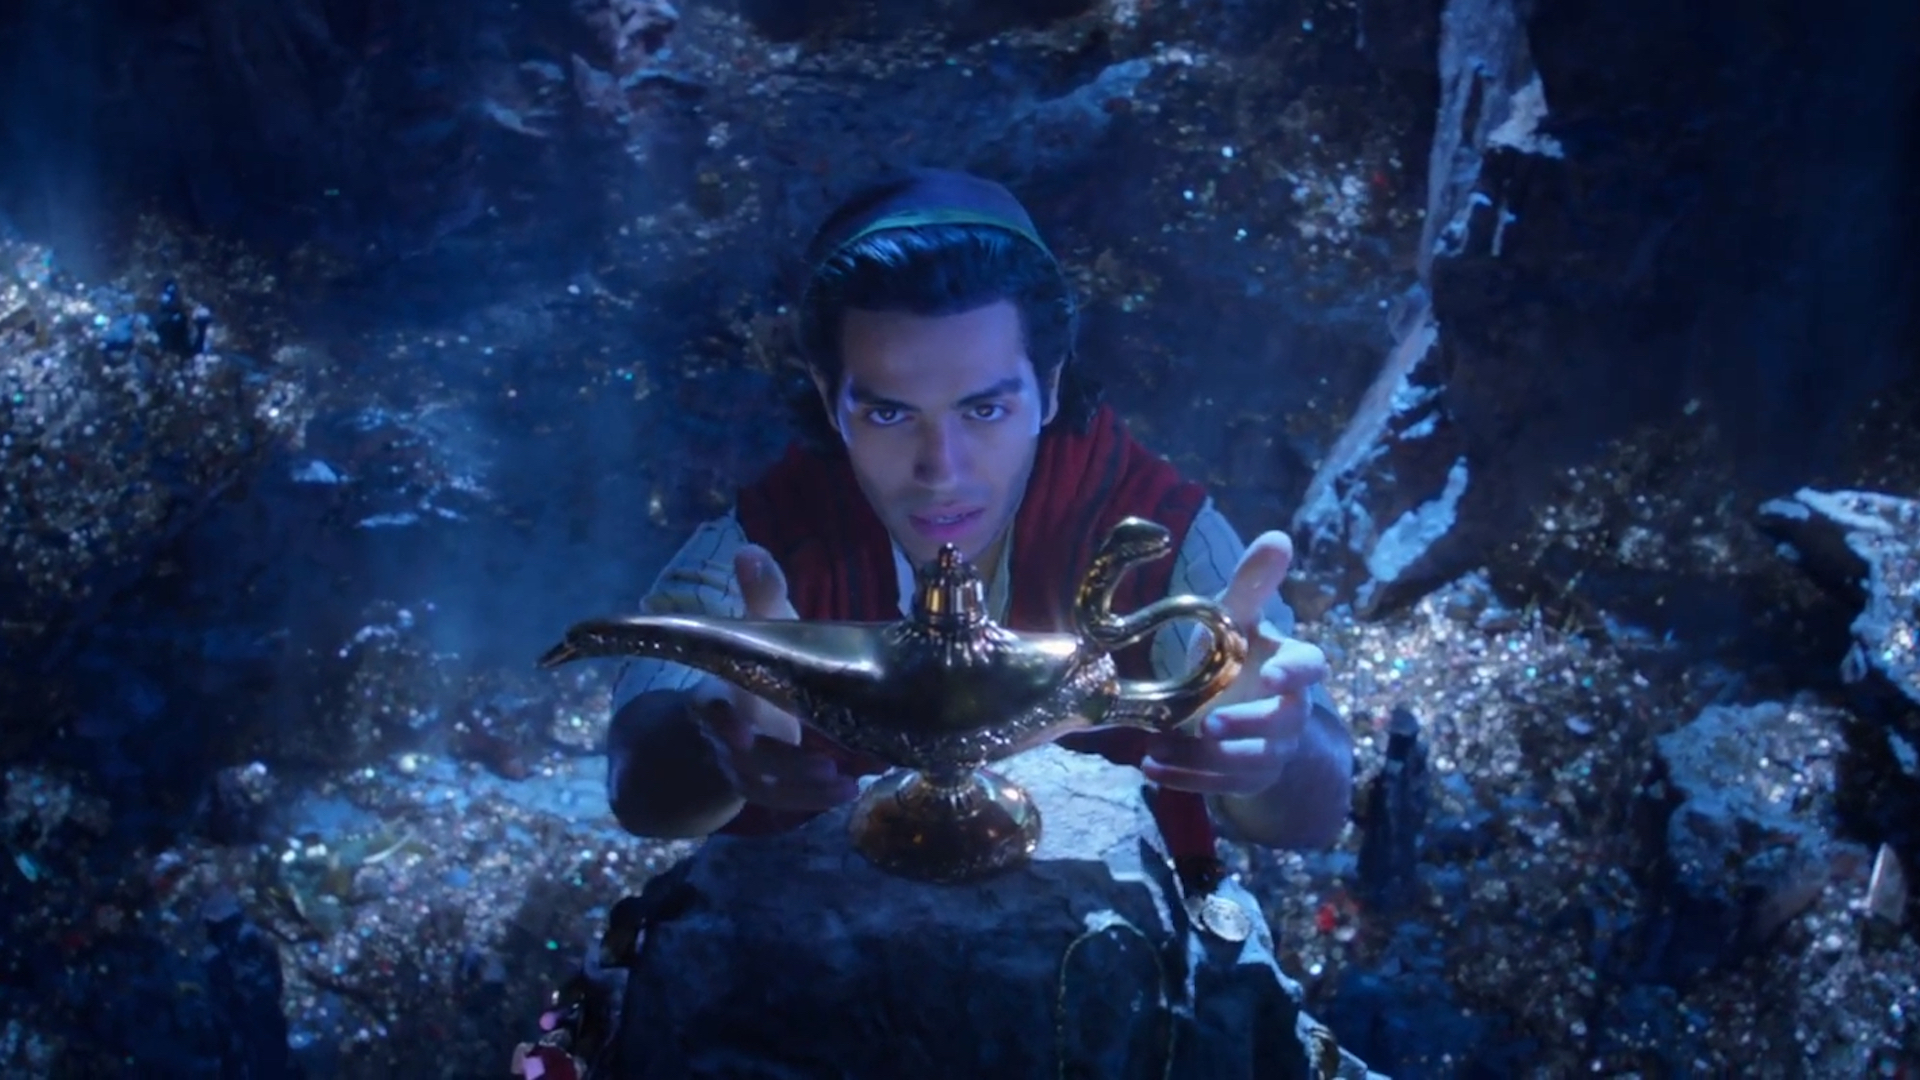 Aladdin discovers a magic lamp